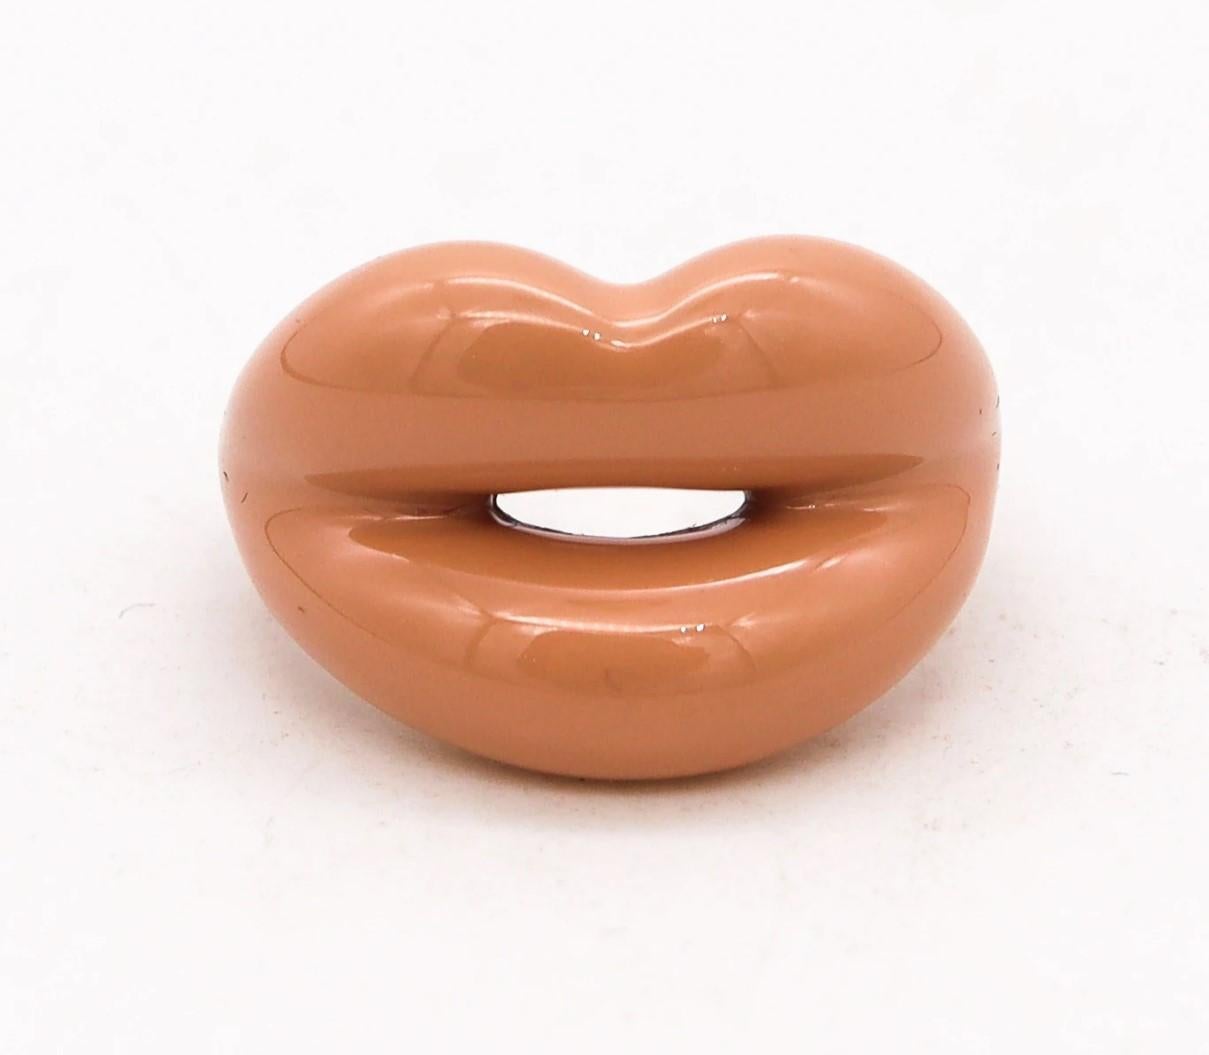 Bague Hot-lips conçue par Solange Azagury-Partridge.

Les bagues hot-lips de Solange Azagury-Partridge ont été créées en édition limitée. Cette bague jeune et amusante est fabriquée en argent massif .925 et ornée d'un émail chaud de couleur